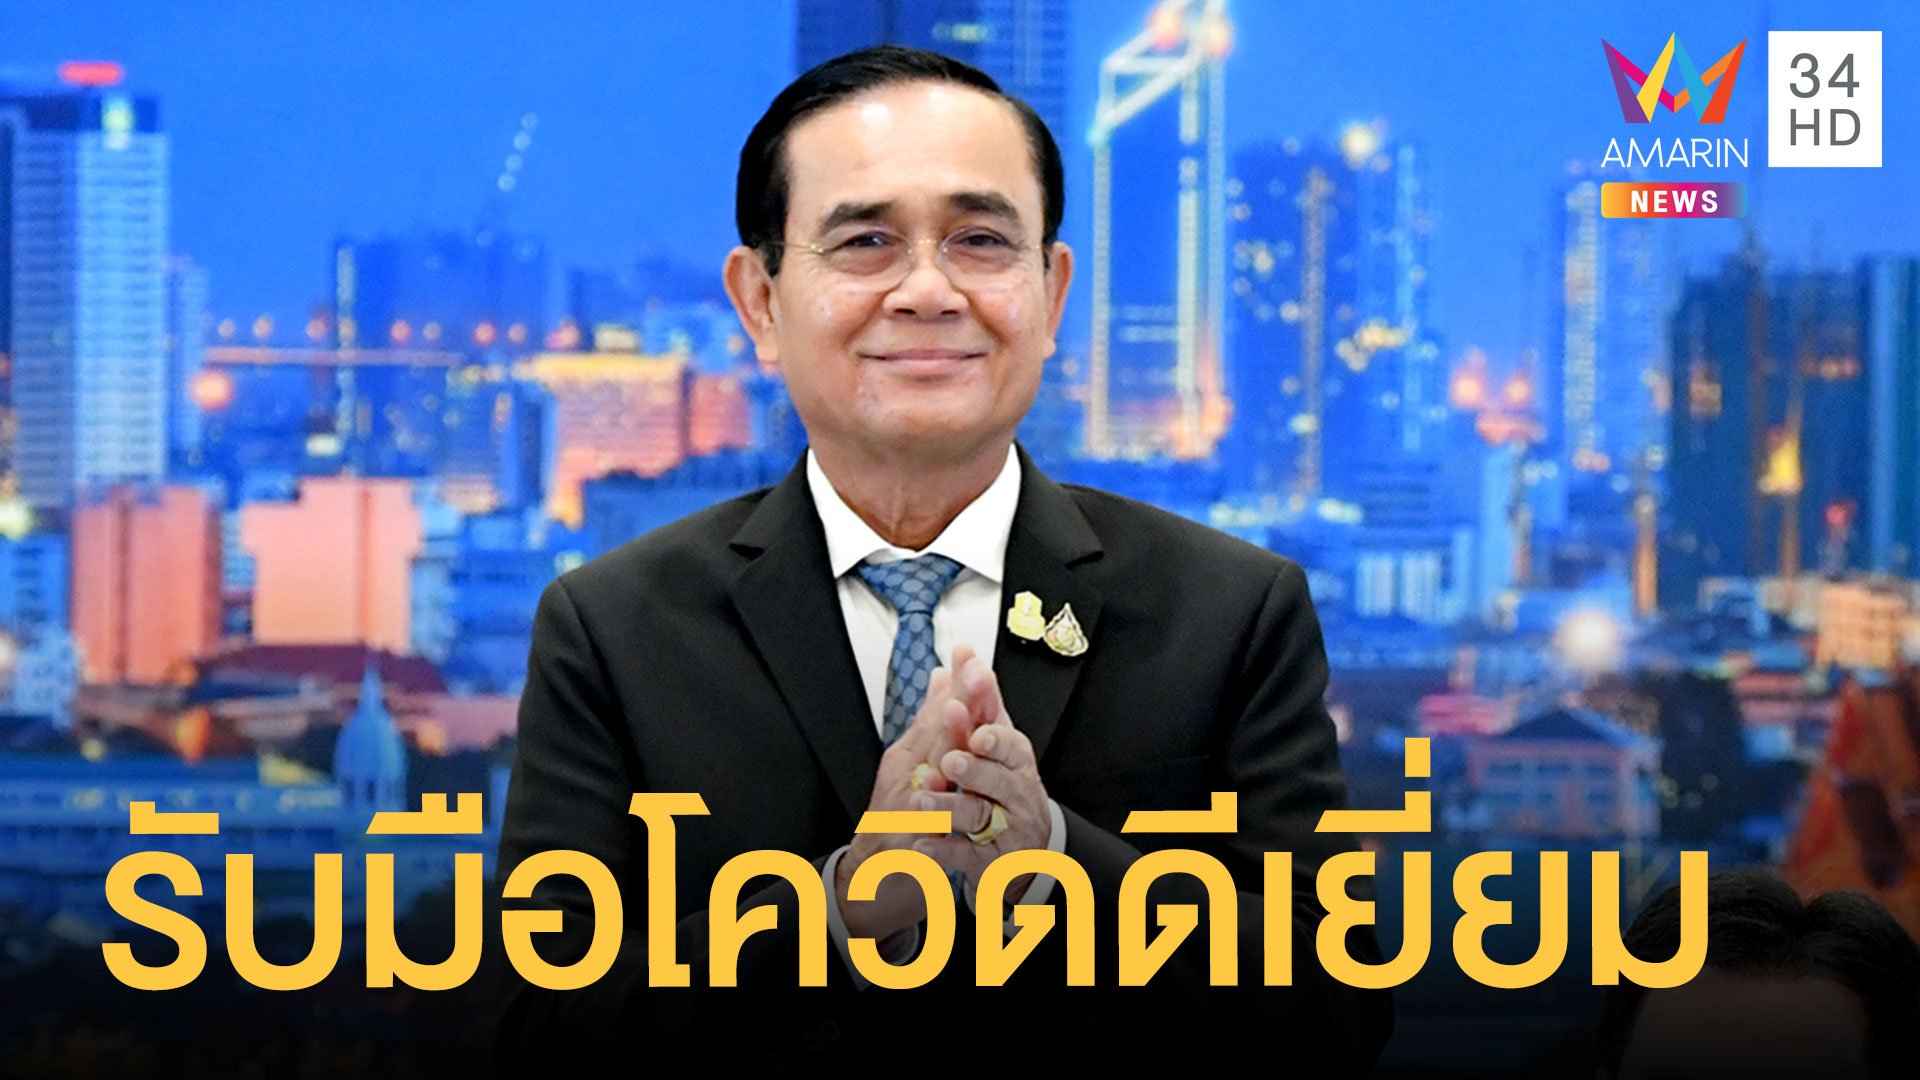 องค์การอนามัยโลกชมรัฐบาลไทย รับมือโควิด-19 ดีเยี่ยม | ข่าวอรุณอมรินทร์ | 15 พ.ย. 63 | AMARIN TVHD34